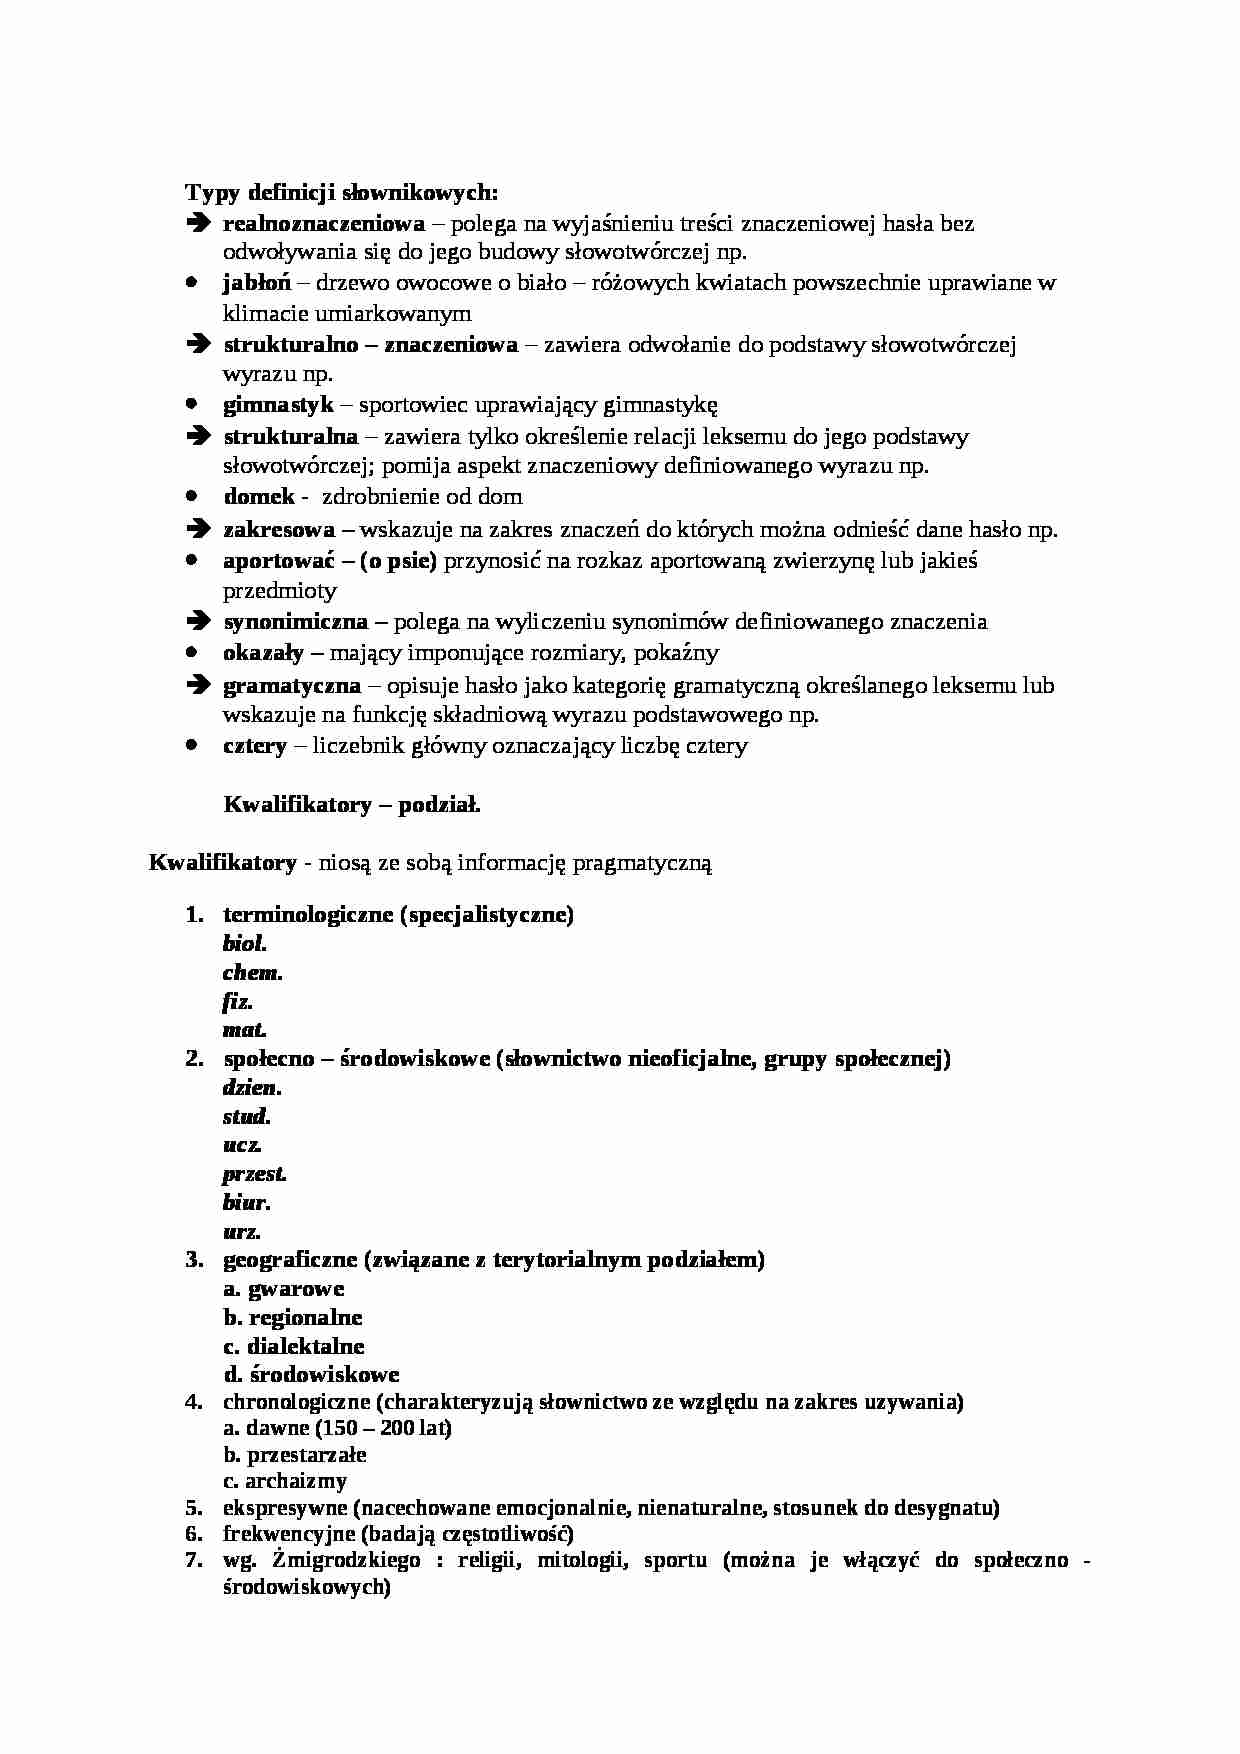 Typy definicji słownikowych i kwalifikatory - wykład - strona 1